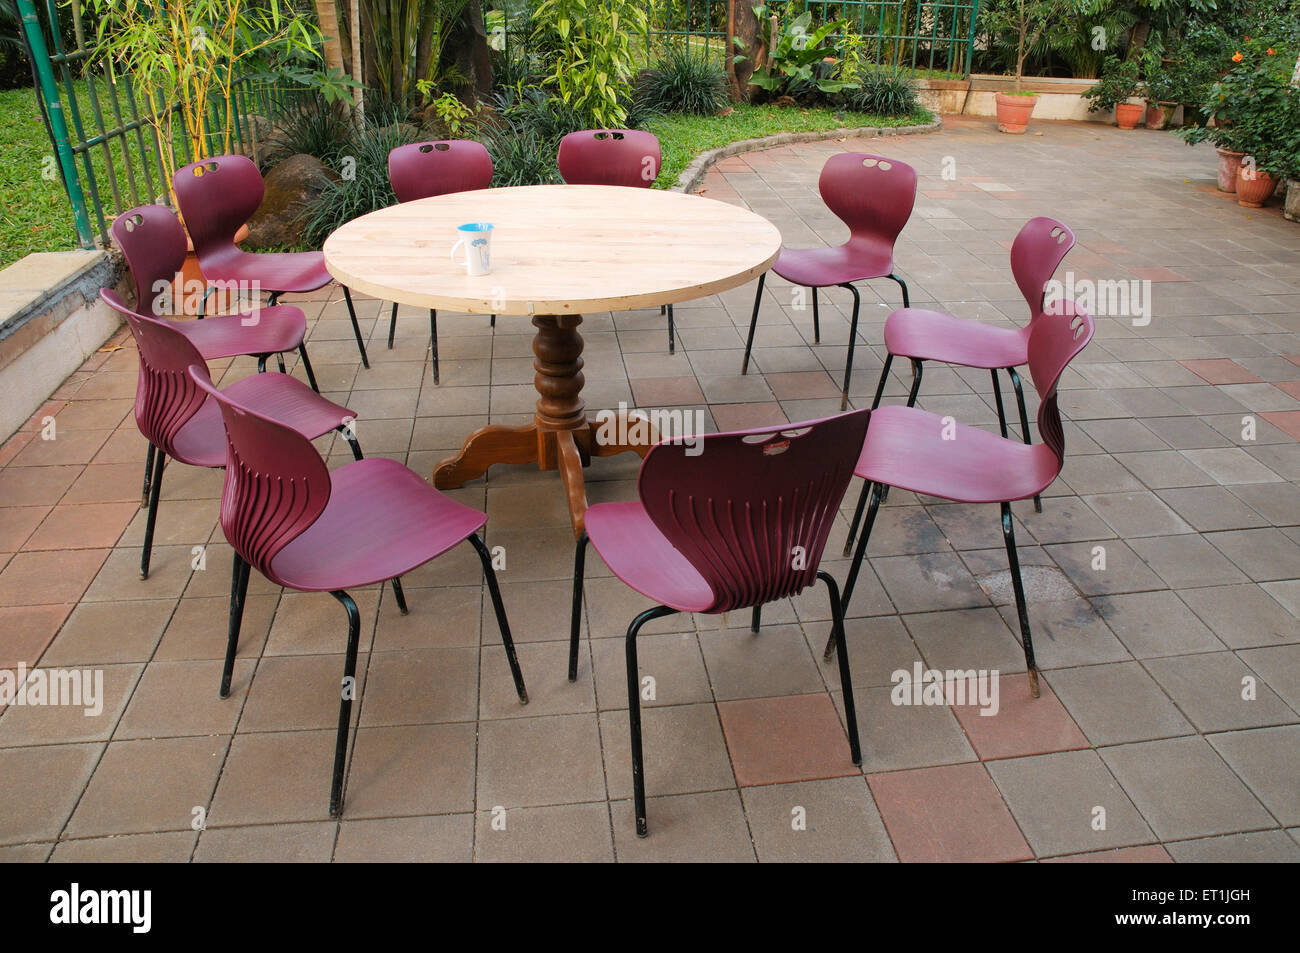 table ronde en bois avec dix chaises en plastique dans le jardin Banque D'Images